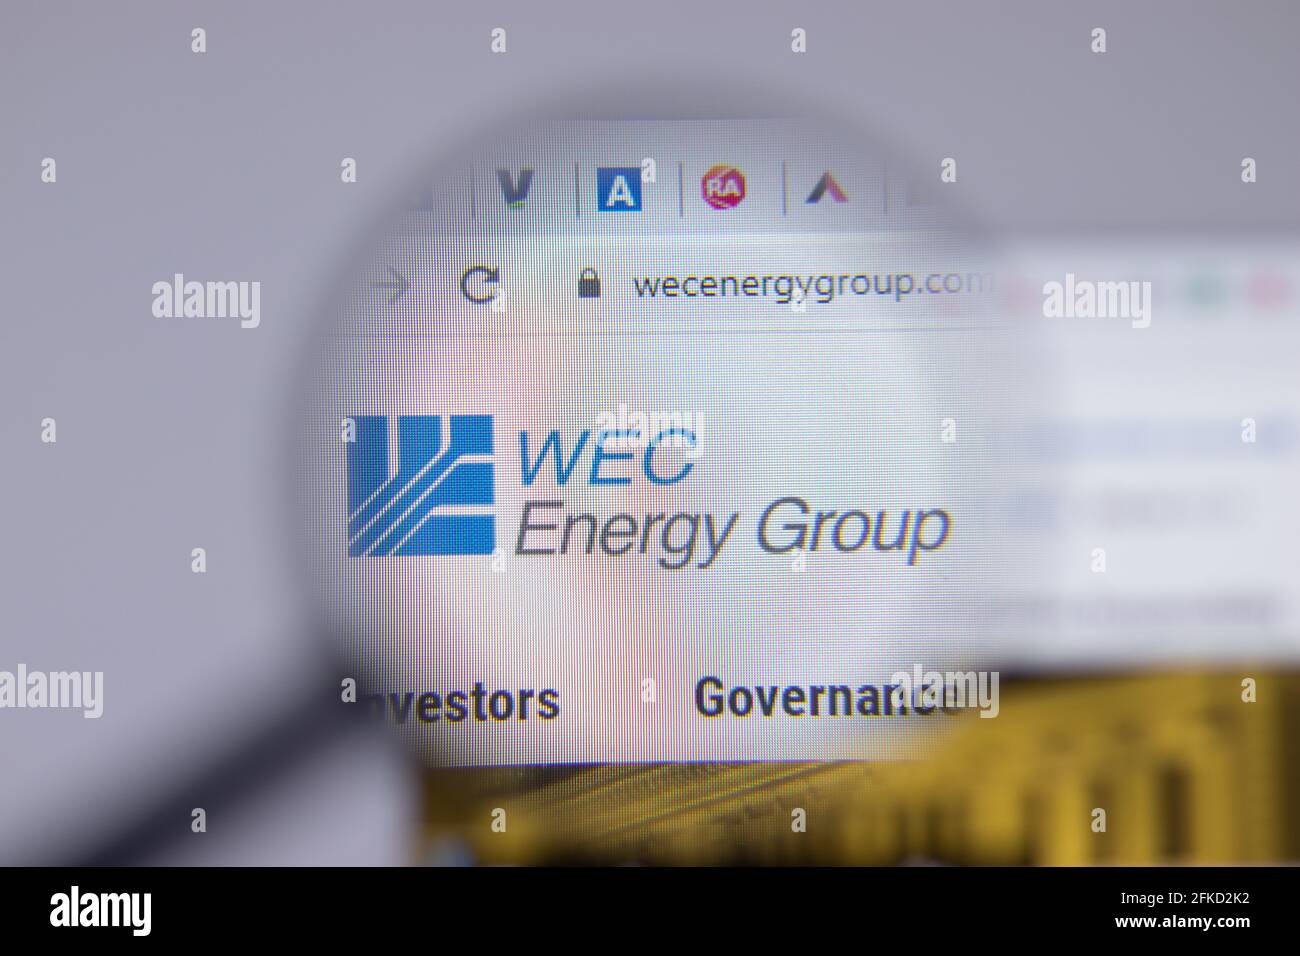 New York, USA - 26 Aprile 2021: Primo piano del logo della società del Gruppo WEC Energy sulla pagina del sito, Editoriale illustrativo Foto Stock